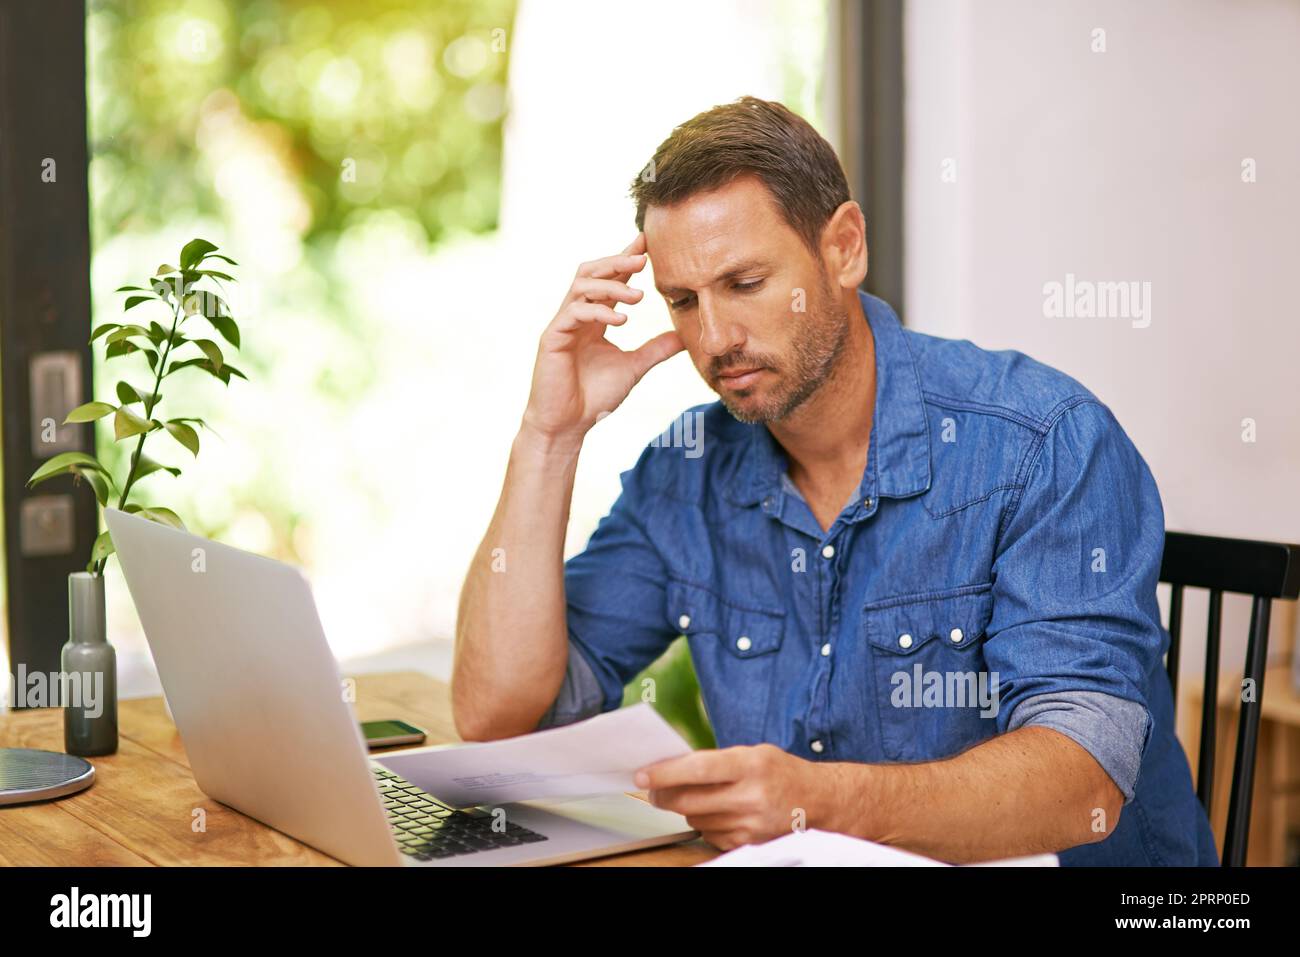 Sein kleines Unternehmen von zu Hause aus zu verwalten. Ein Mann, der sich während der Arbeit von zu Hause aus einen Papierkram ansieht. Stockfoto